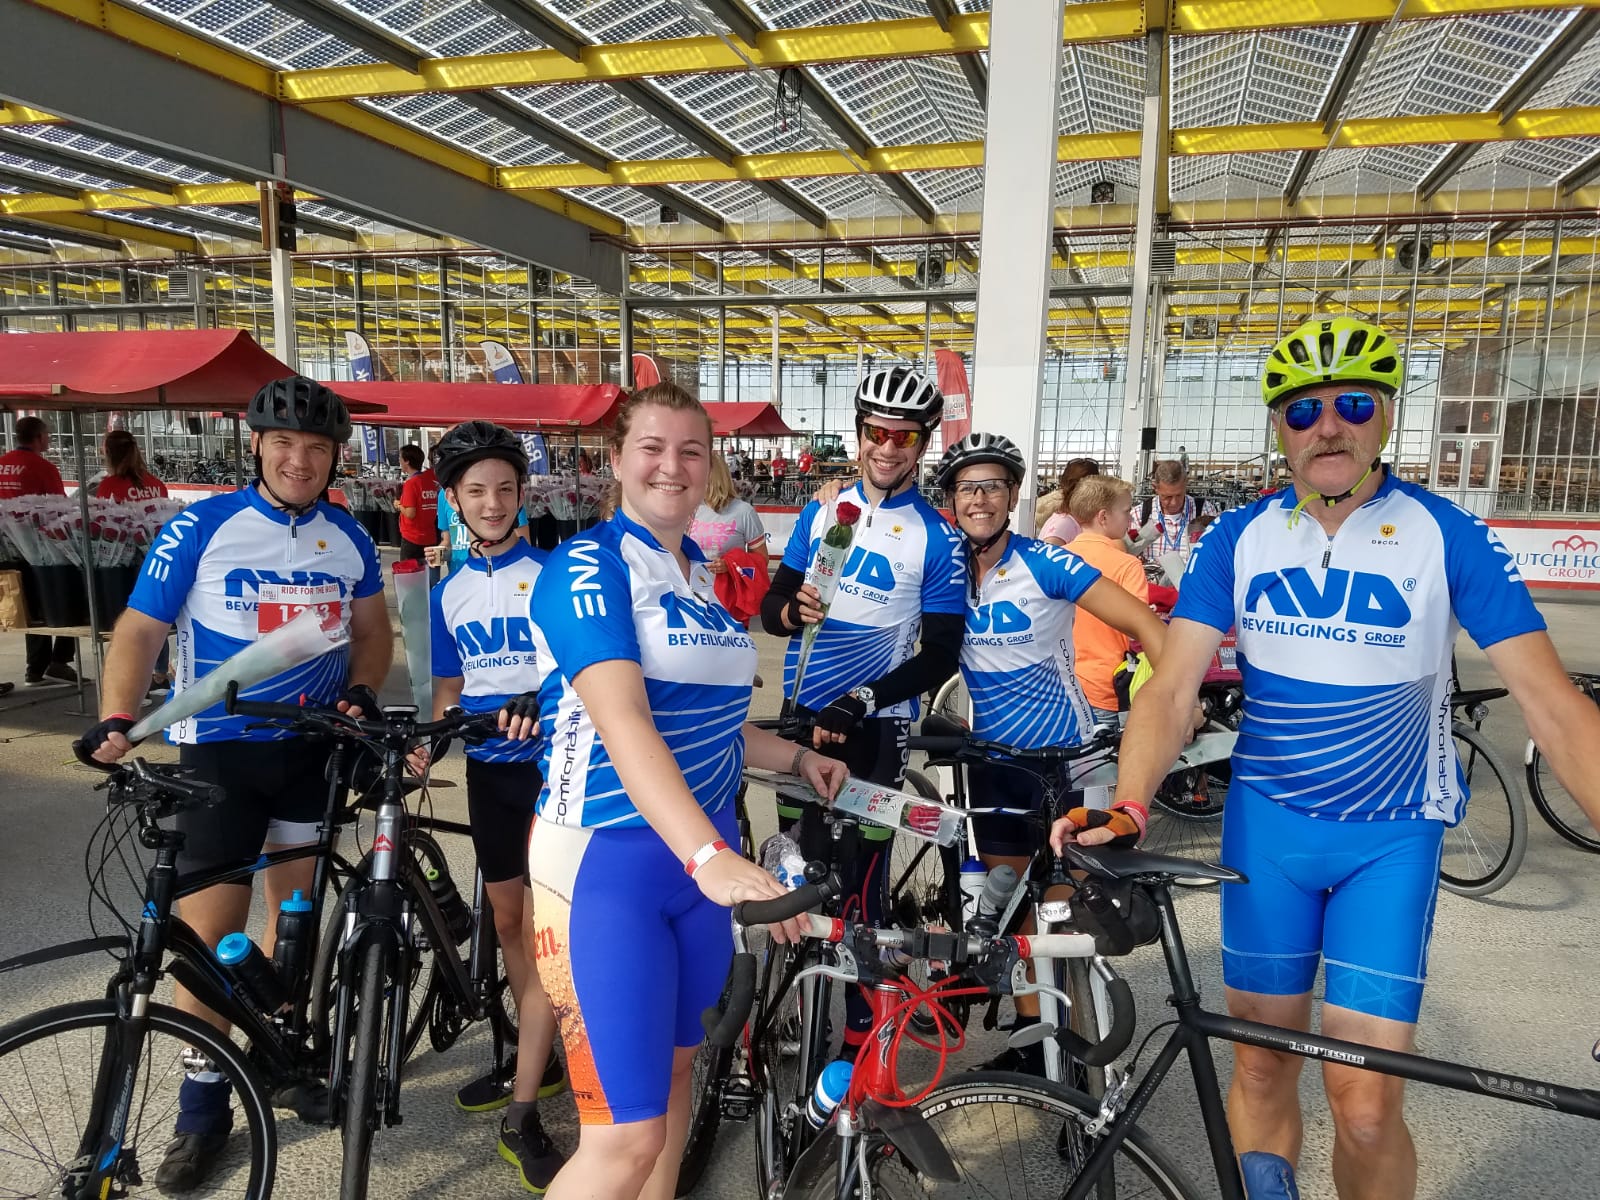 NVD fietsteam voor kanker onderzoek